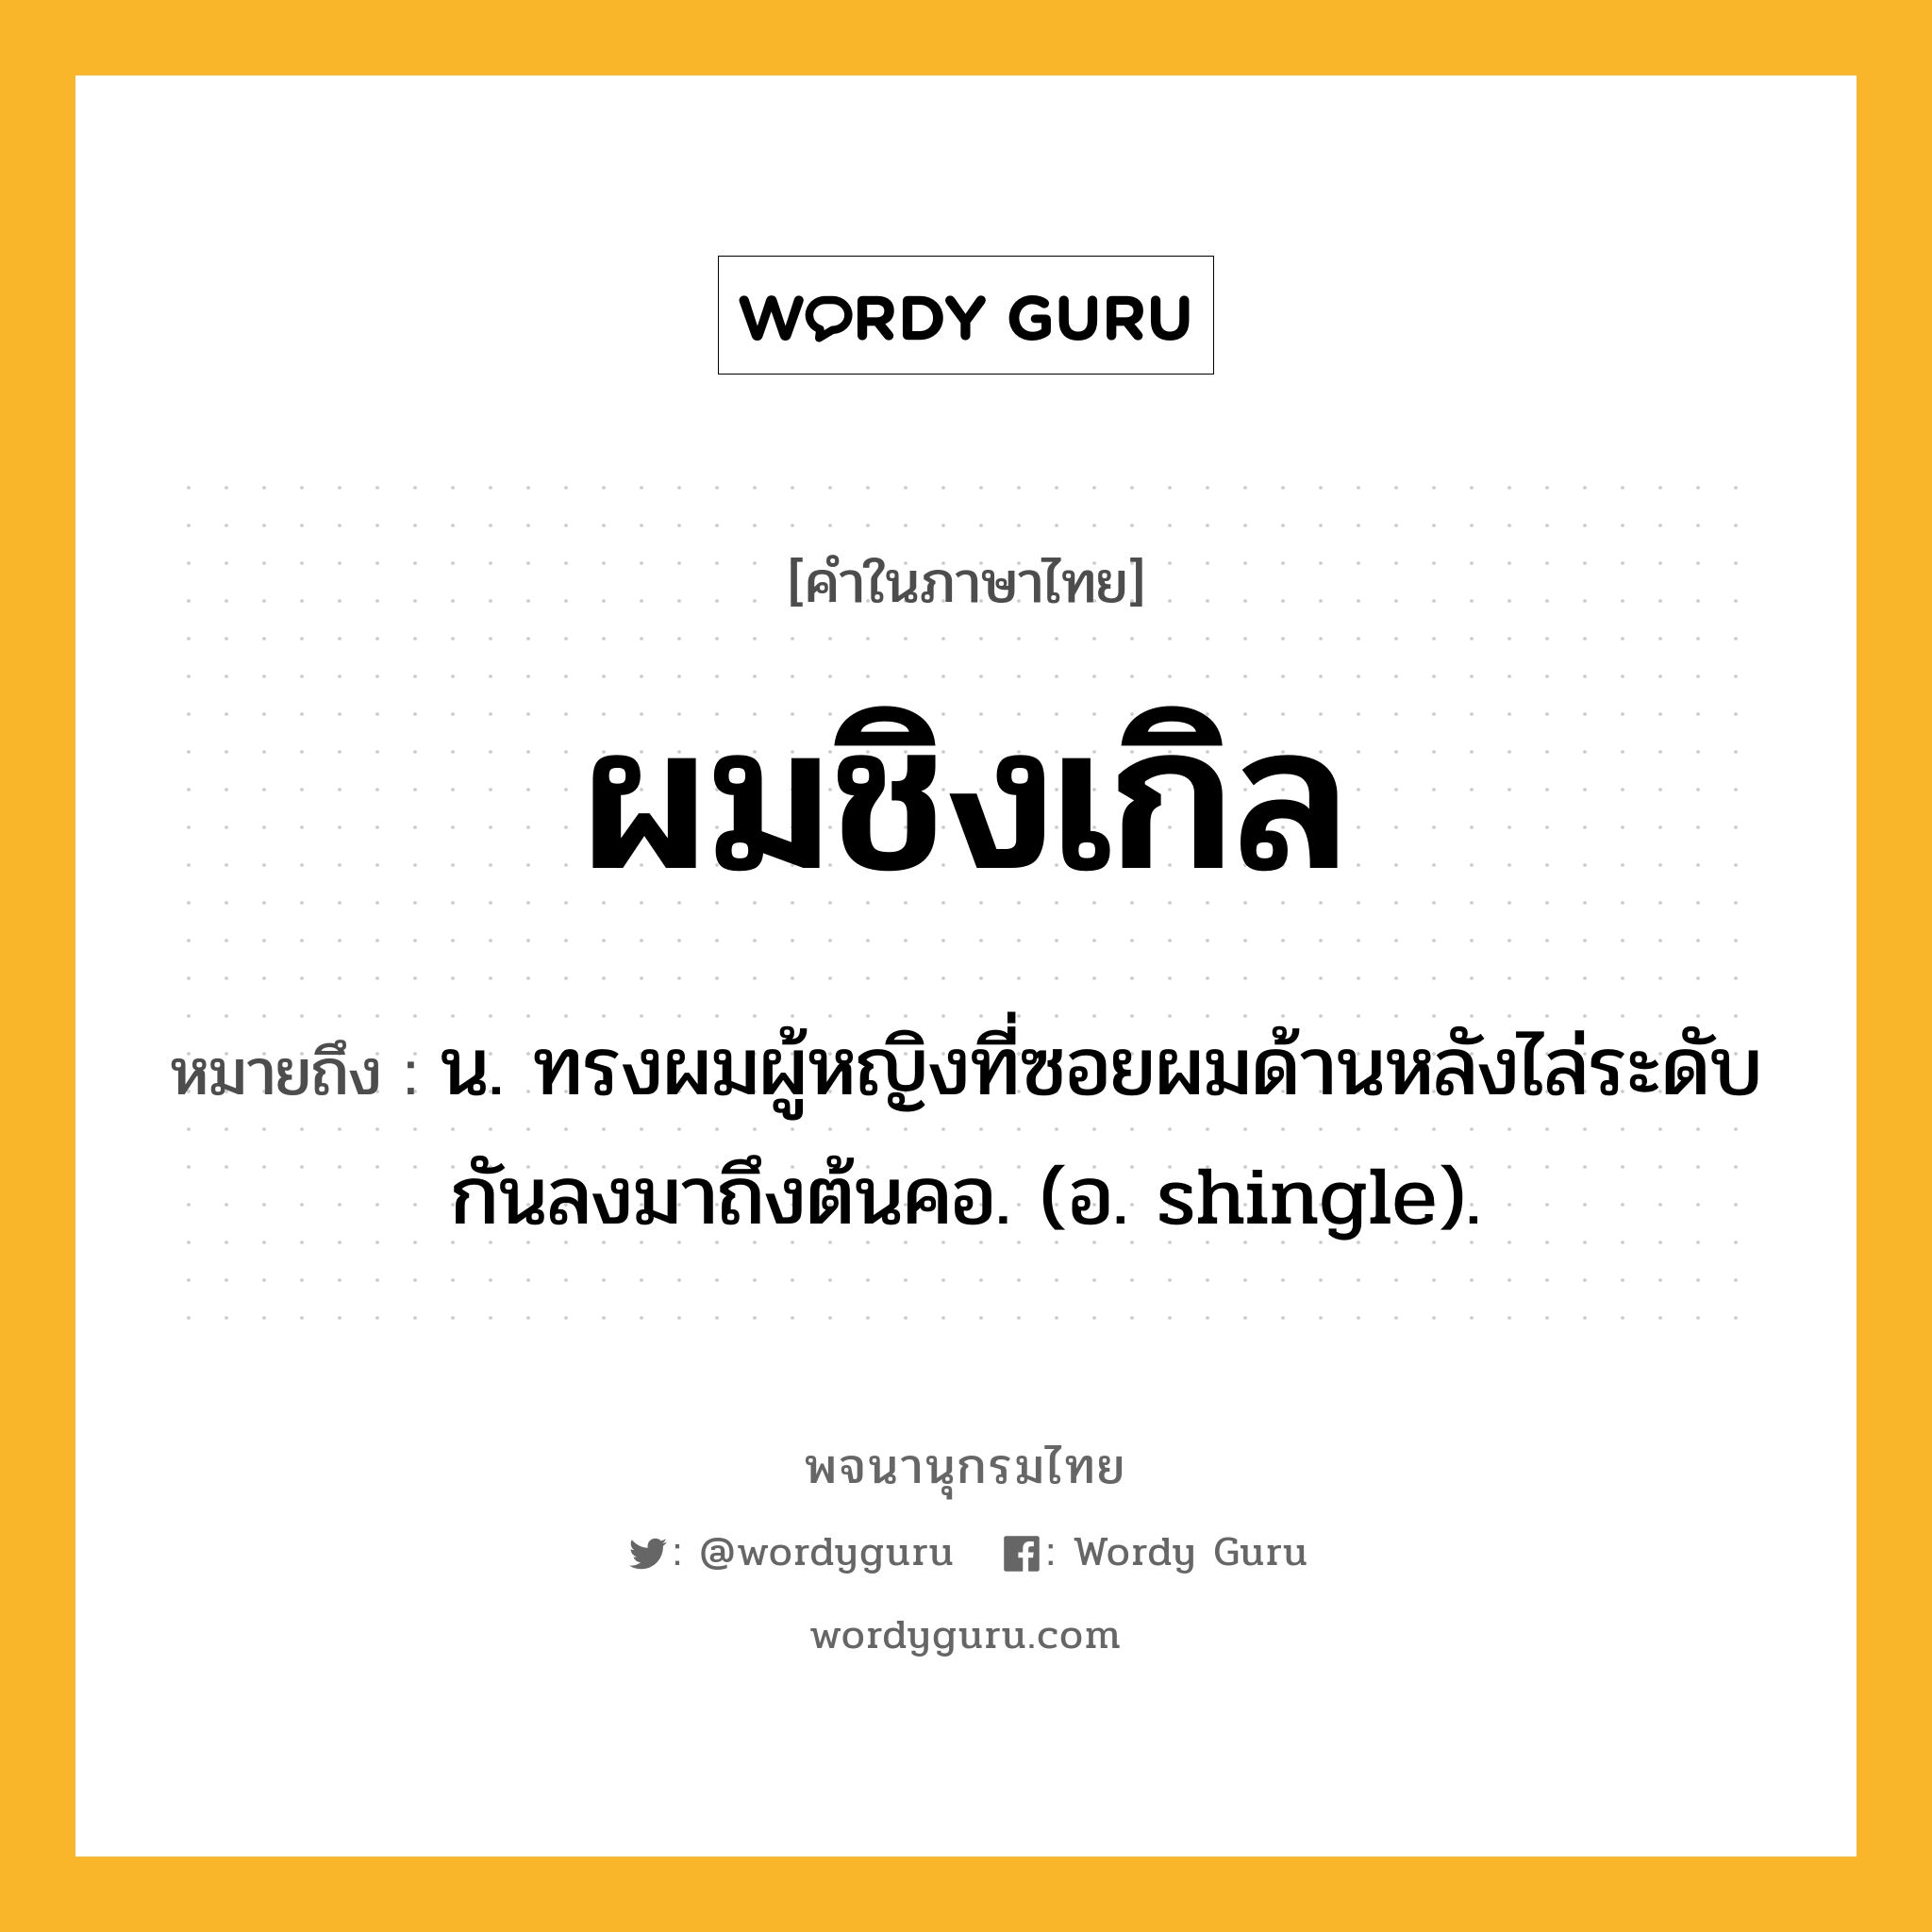 ผมชิงเกิล หมายถึงอะไร?, คำในภาษาไทย ผมชิงเกิล หมายถึง น. ทรงผมผู้หญิงที่ซอยผมด้านหลังไล่ระดับกันลงมาถึงต้นคอ. (อ. shingle).